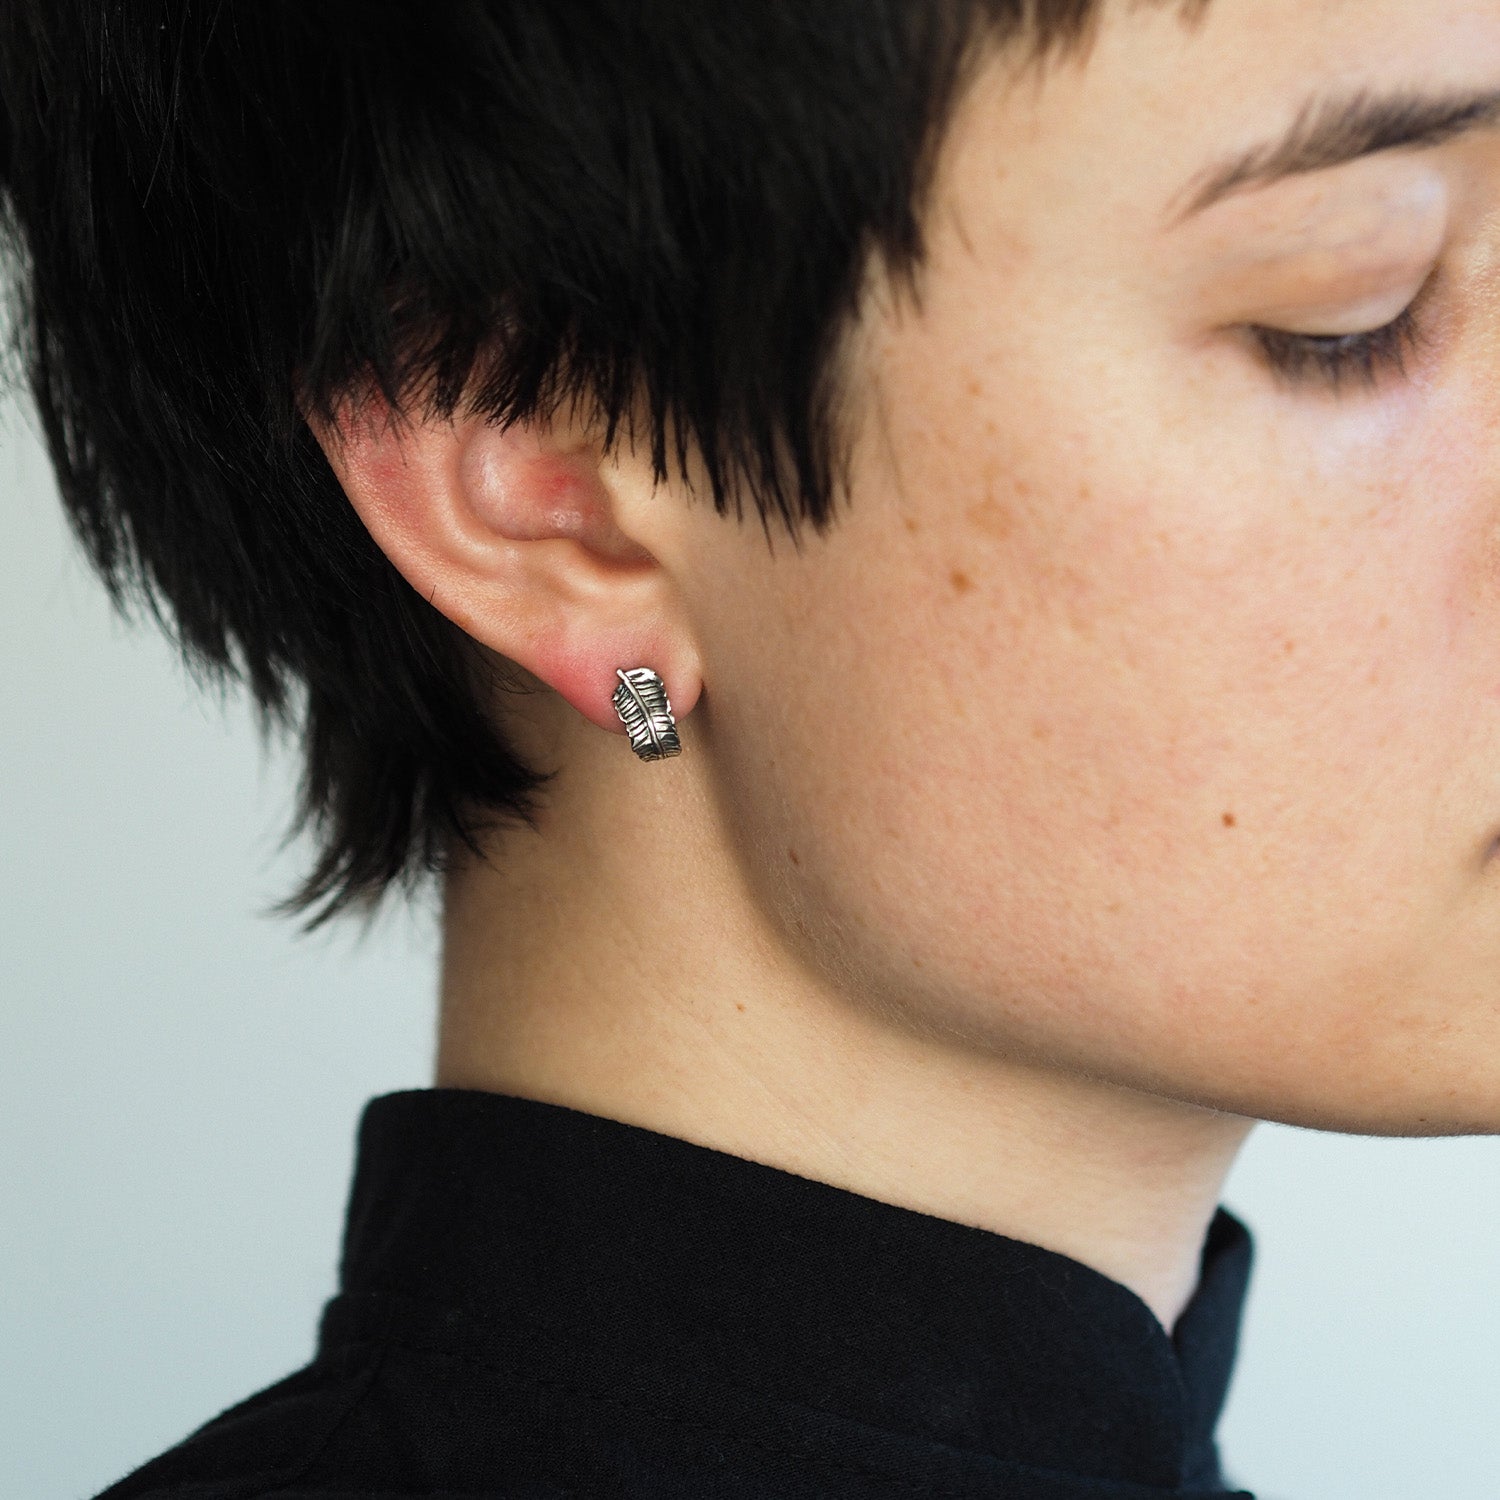 Fern Earrings by Yasmin Everley